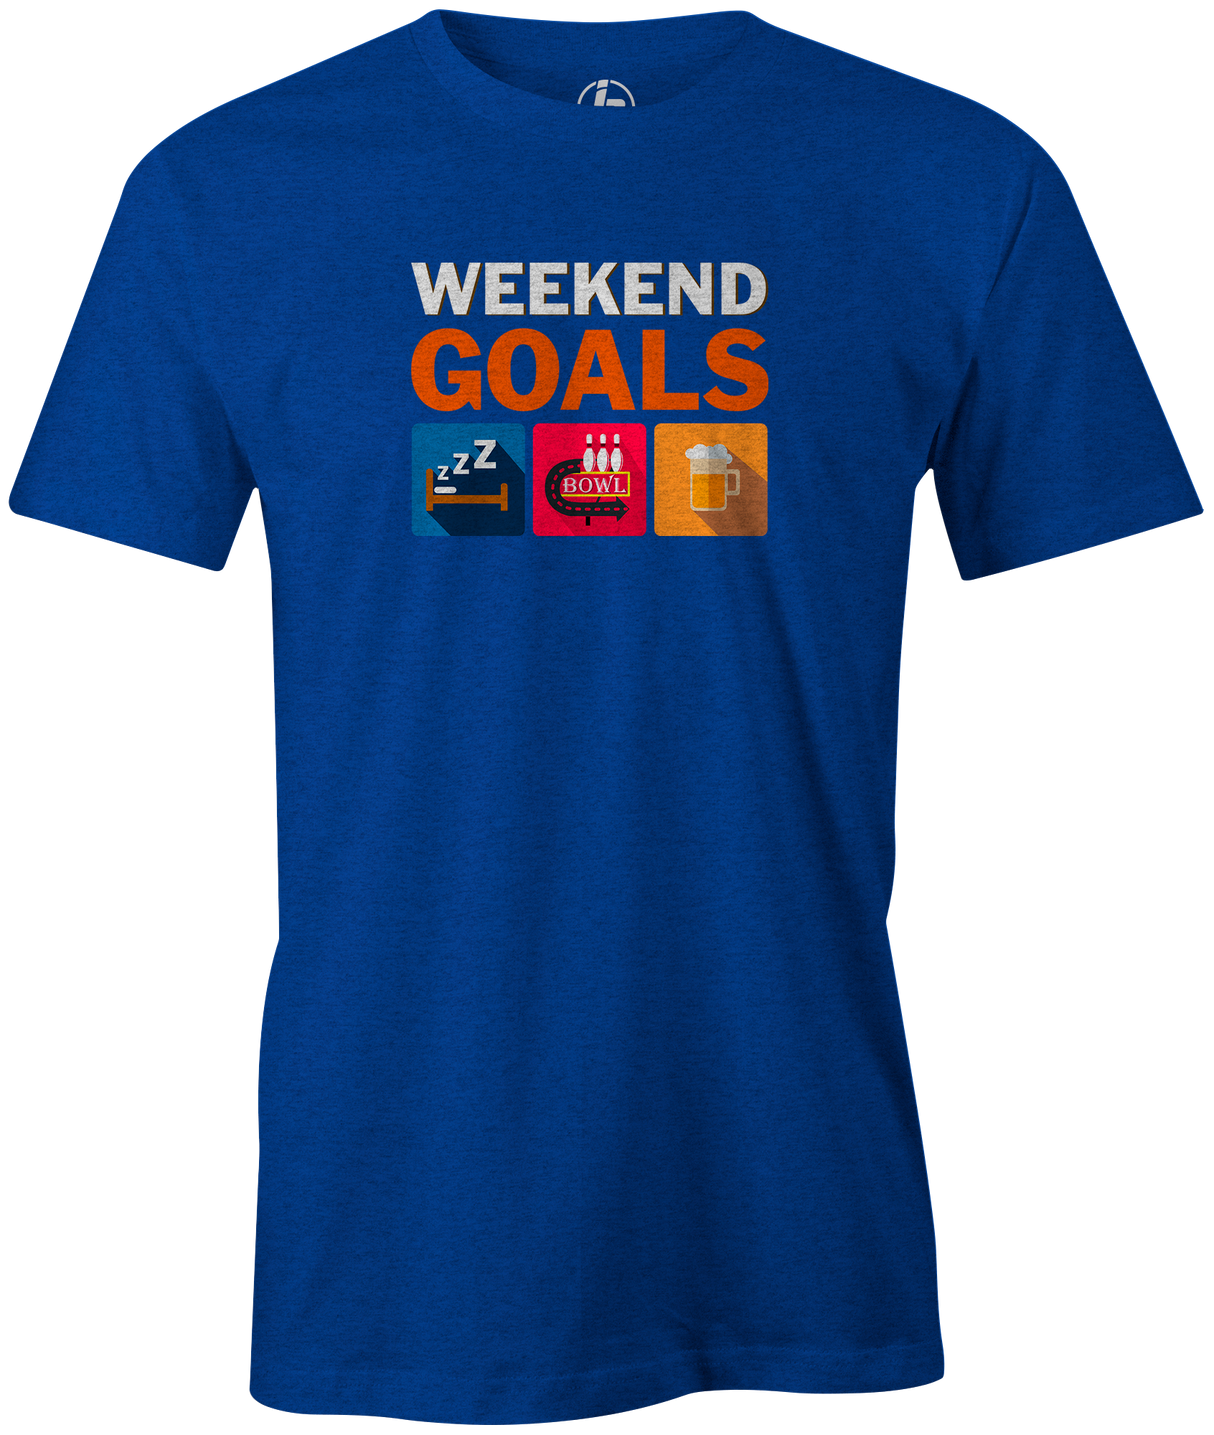 Weekend Goals Men's T-shirt, Blue, Bowling, tshirt, tee, tee-shirt, tee shirt